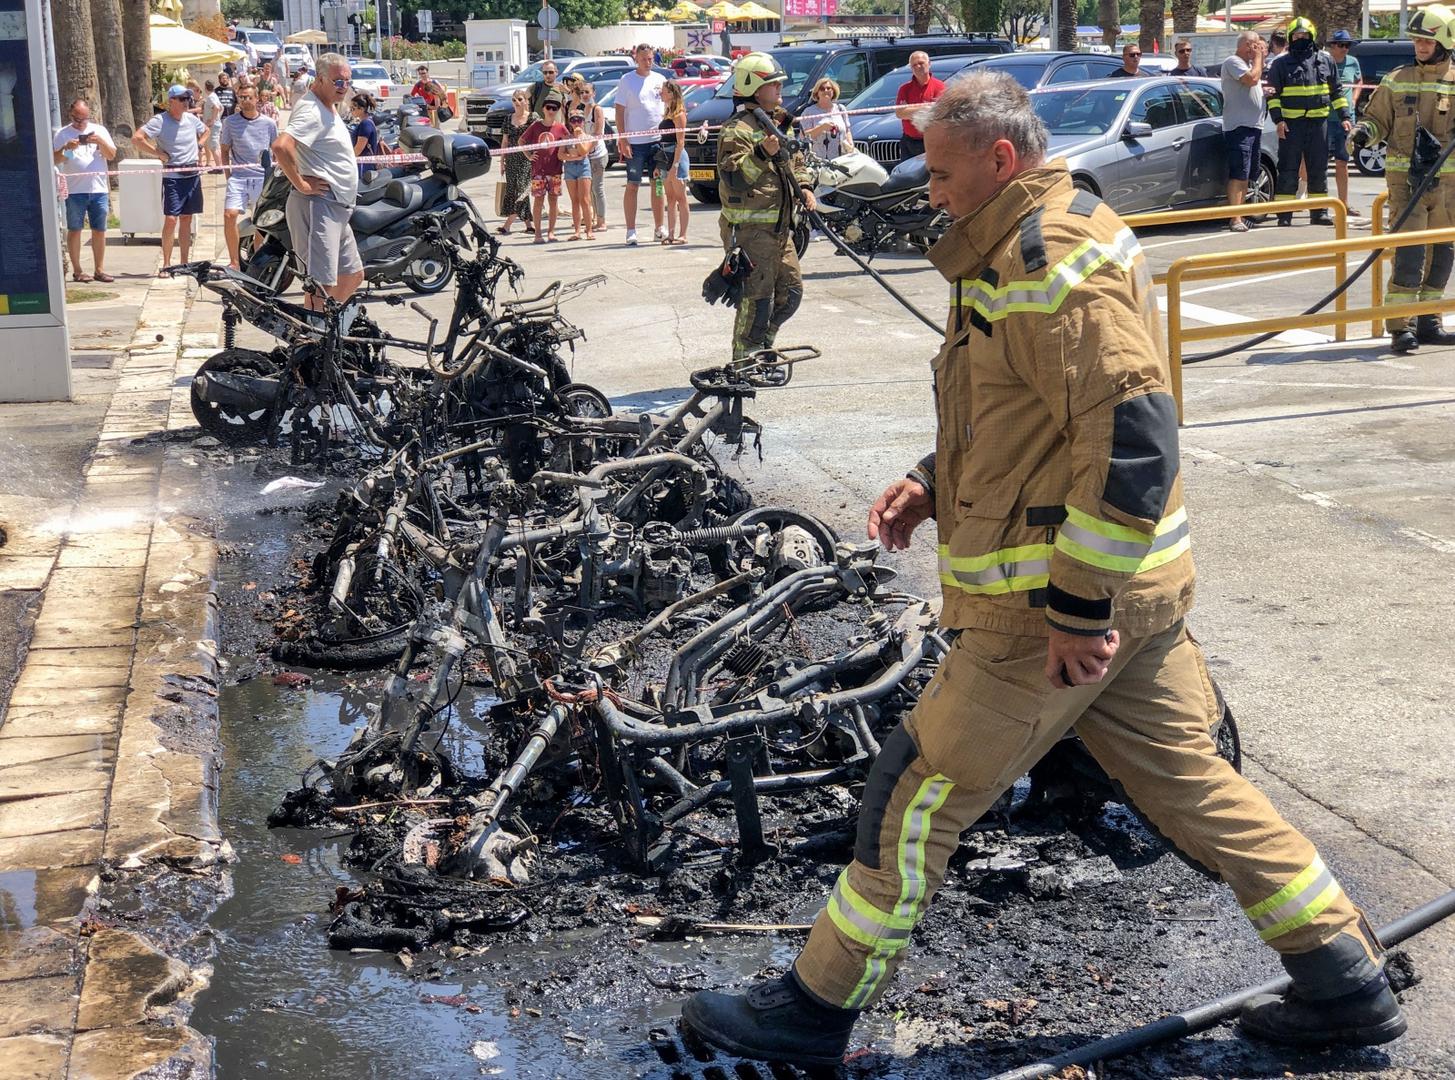 03.08.2020., Split - Vatrogasci vatrogasne postrojbe Split gase desetak zapaljenih motocikala na Rivi. Photo: Ivo Cagalj/PIXSELL